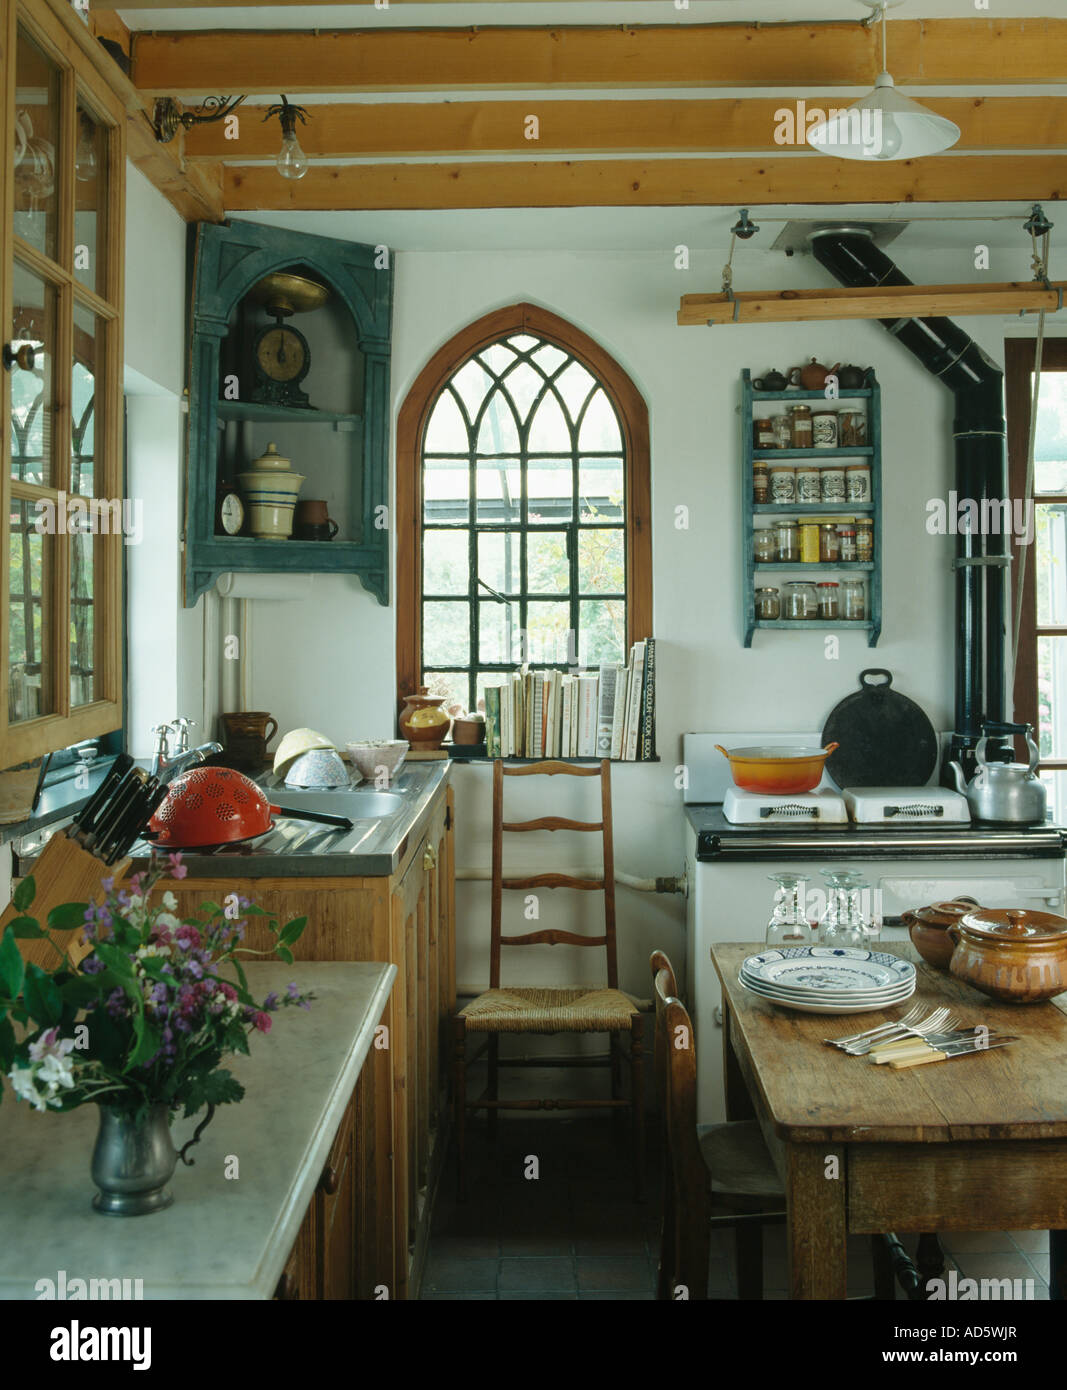 Antica angoliera accanto ad arco finestra gotica in cucina di paese Foto  stock - Alamy